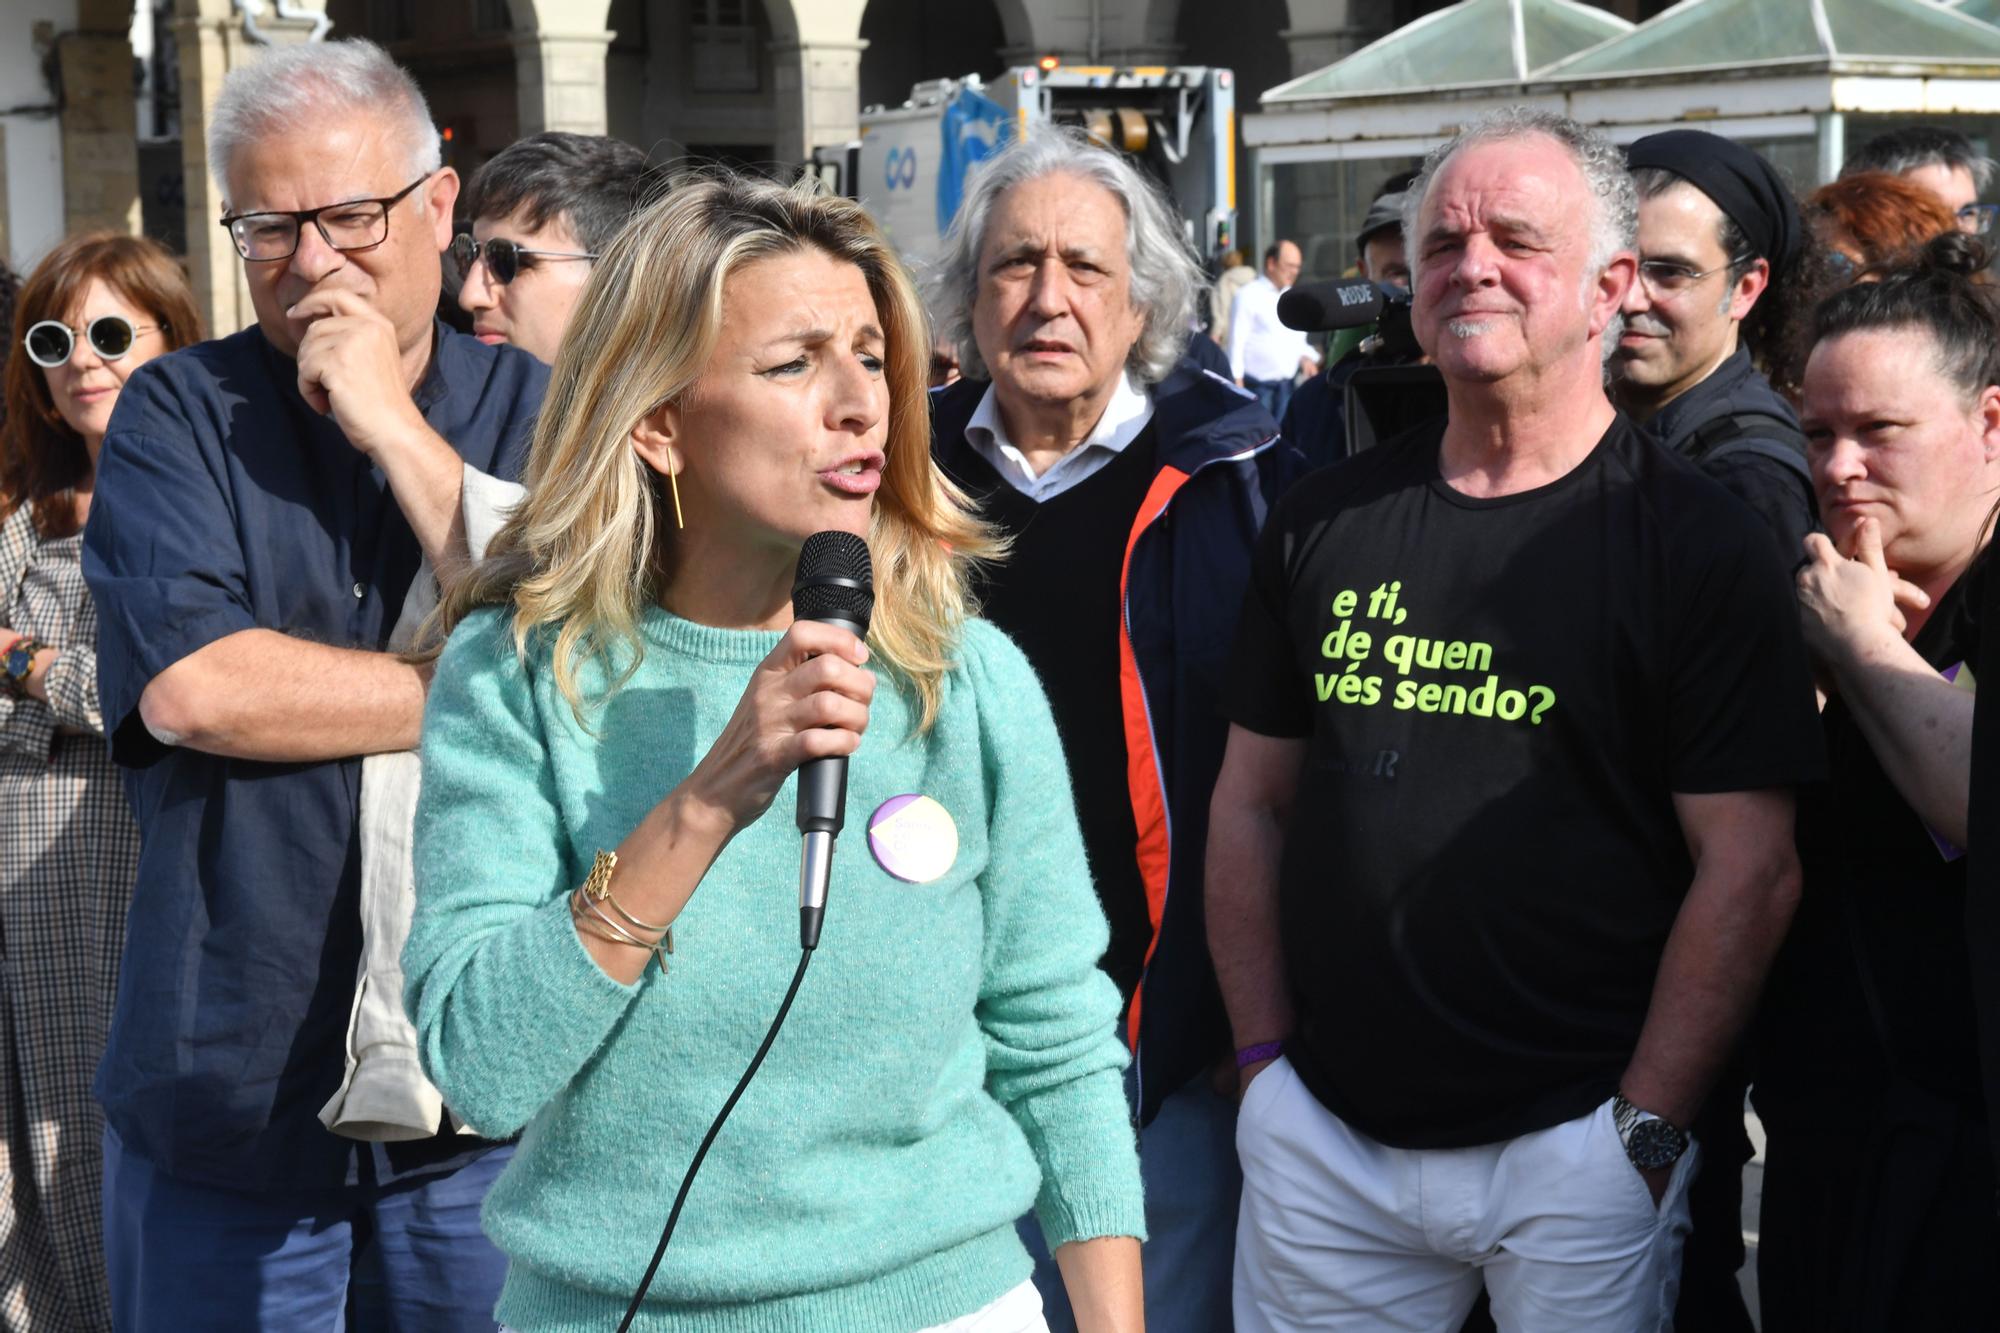 Visita de Yolanda Díaz para apoyar Por Coruña, la formación que encabeza José Manuel Sande